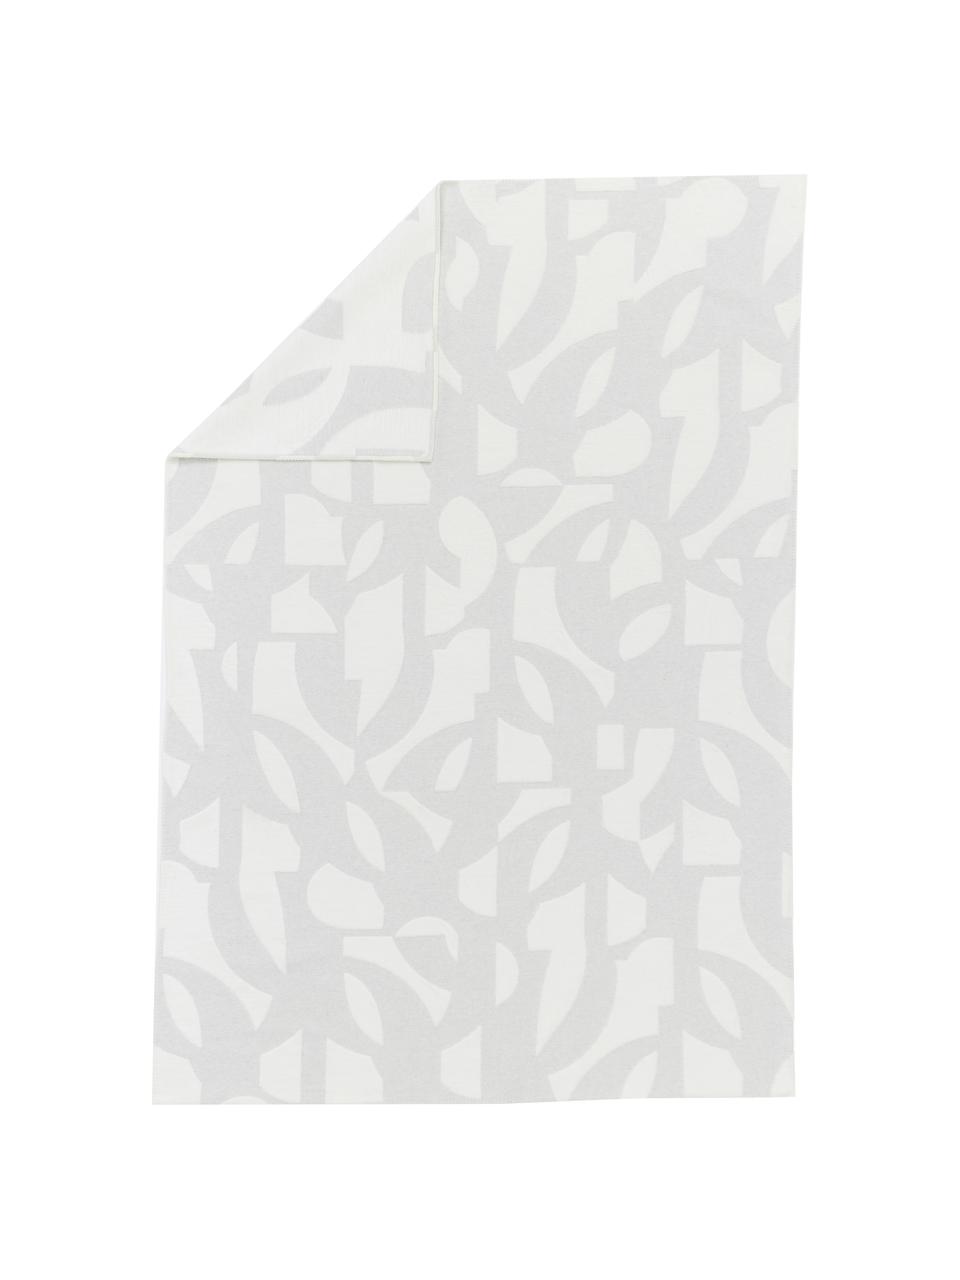 Coperta in flanella color grigio/bianco con cuciture decorative Grafic, 85% cotone, 15% poliacrilico, Grigio, bianco, Larg. 130 x Lung. 200 cm